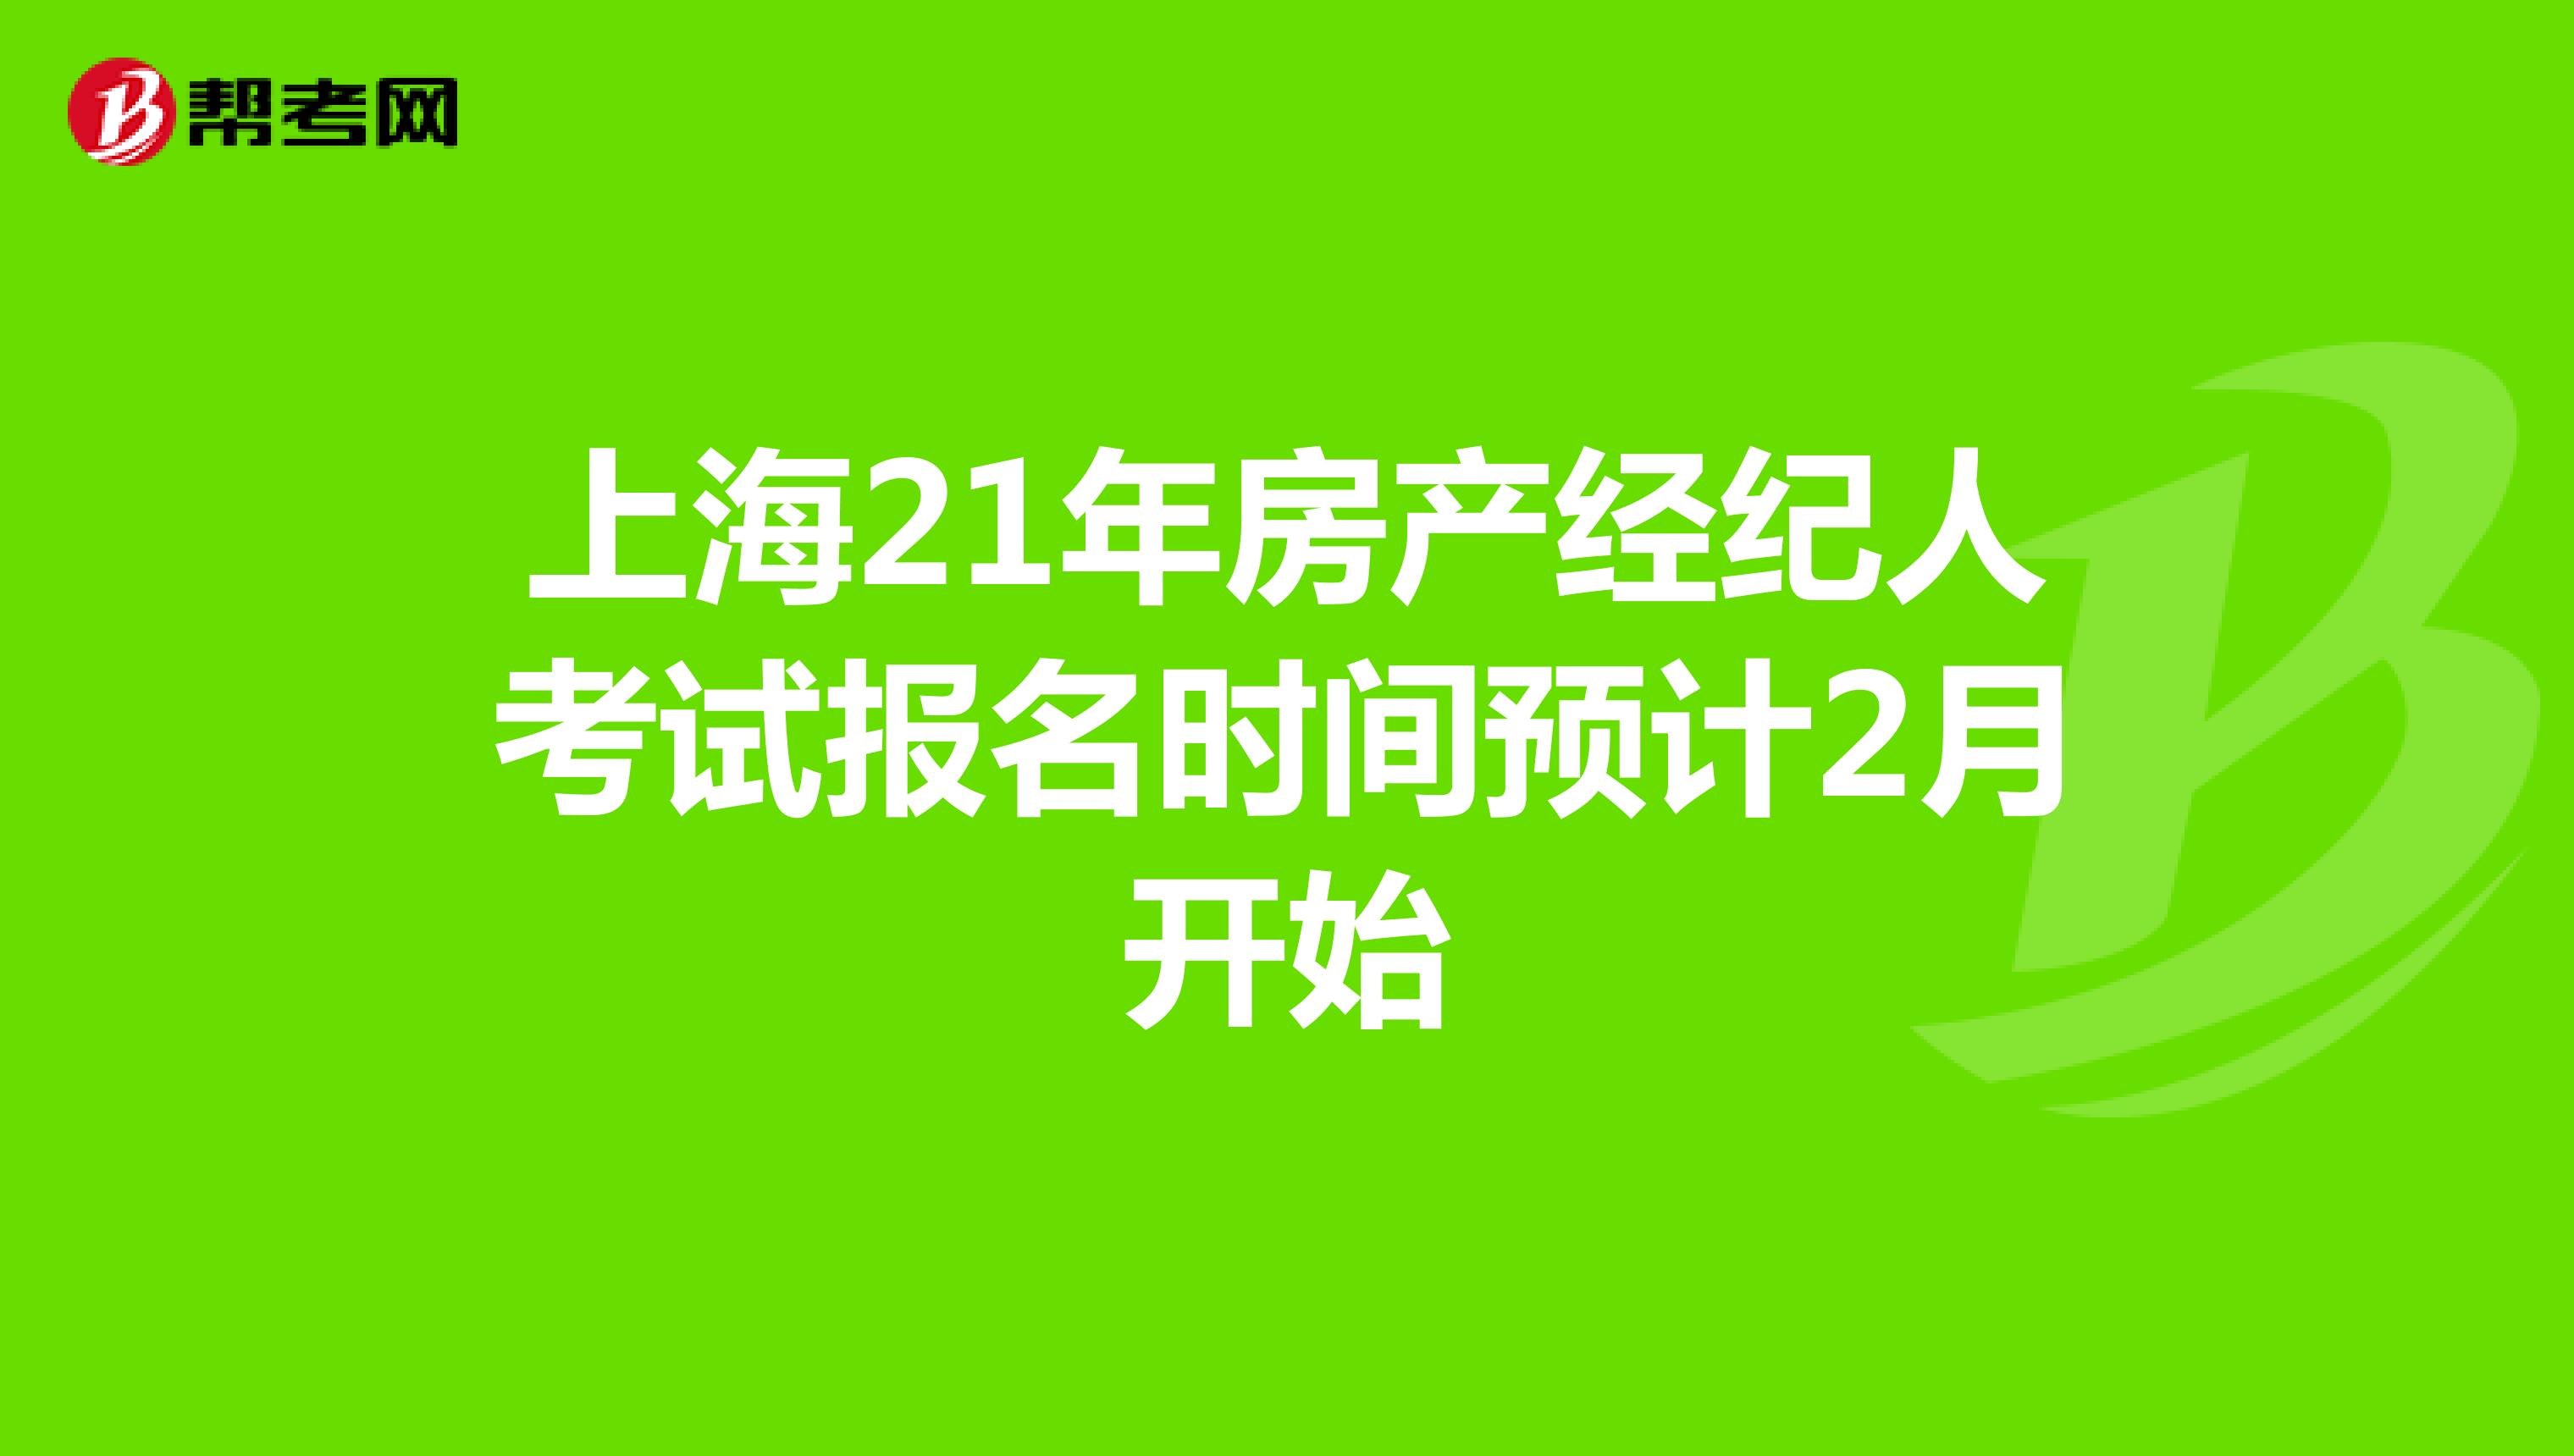 上海21年房产经纪人考试报名时间预计2月开始